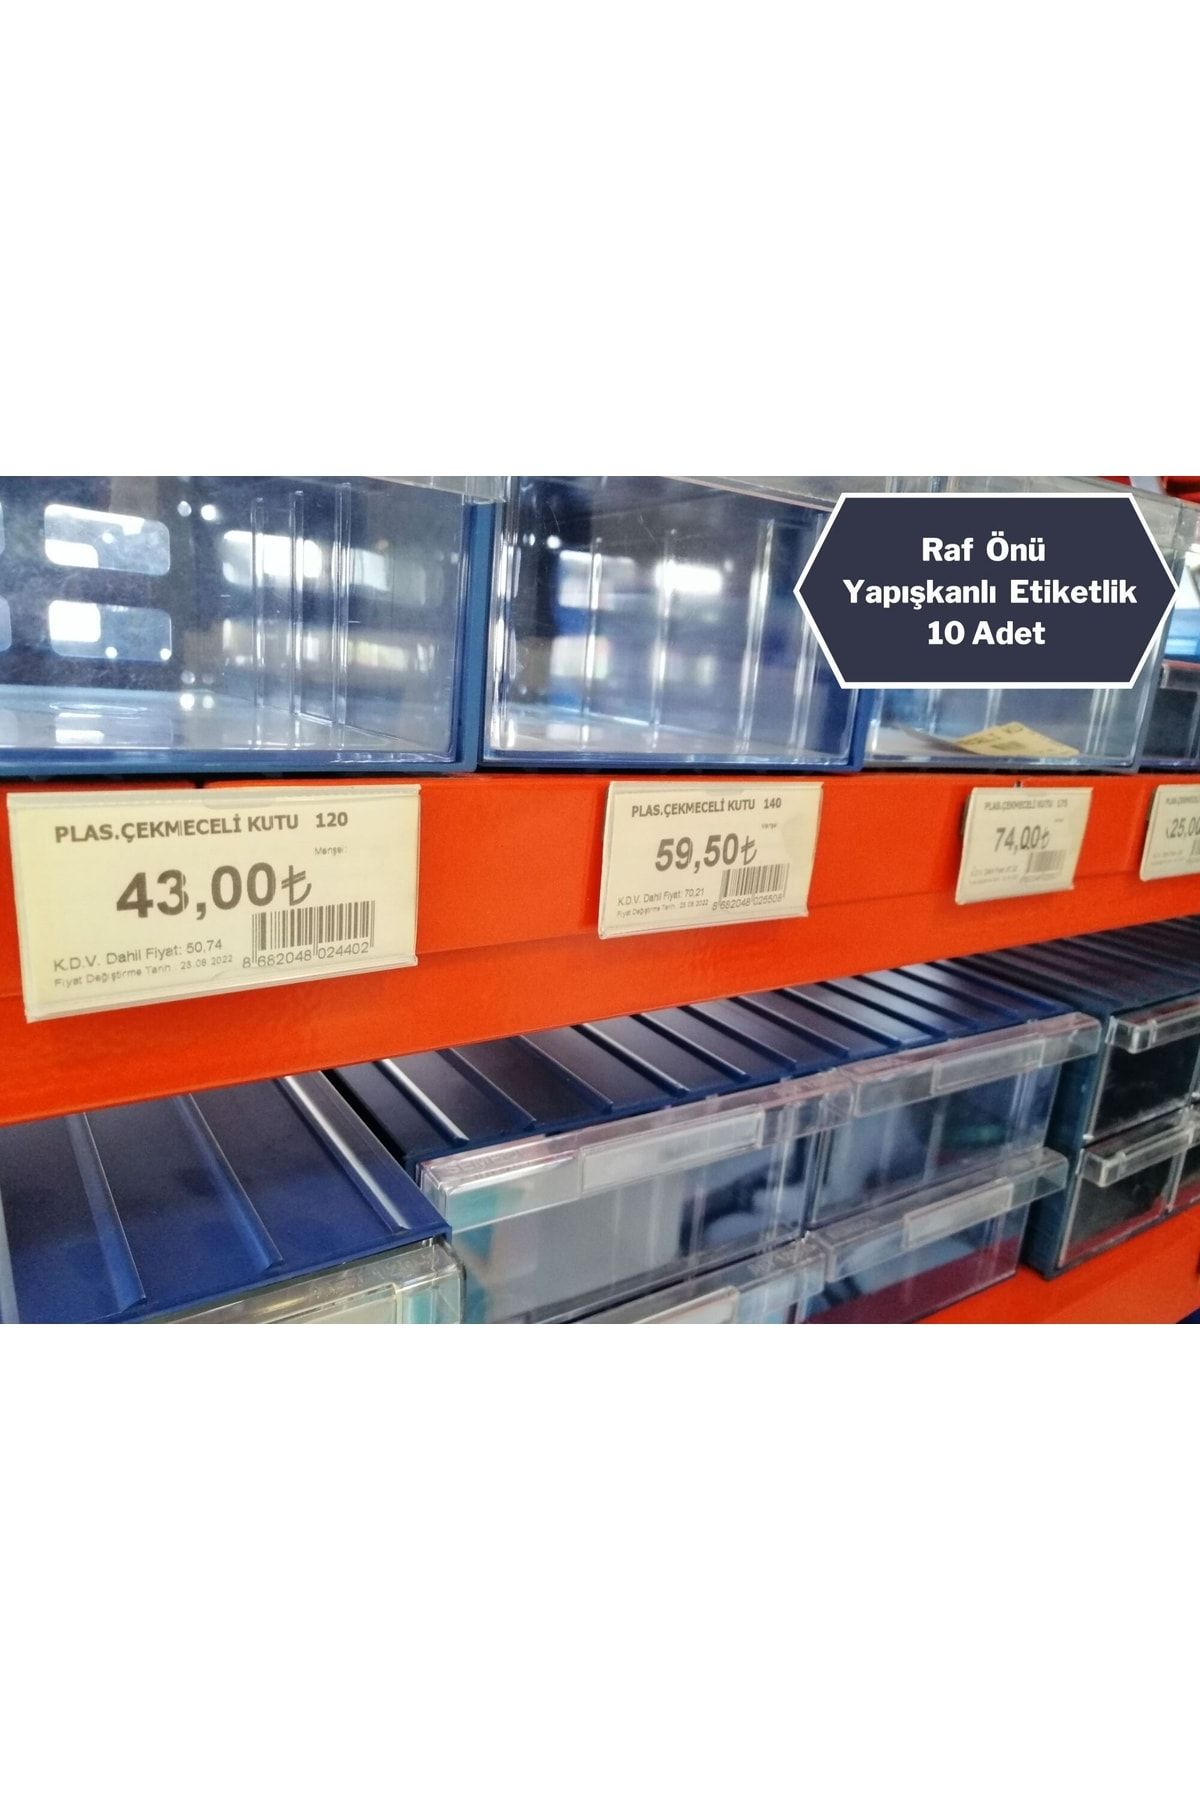 Özfiliz Mağaza Ekipmanları 10 Adet Raf Önü Yapışkanlı Ürün Fiyat Etiketliği, Pvc Yapışkanlı Etiketlik Etiket Cebi 8x4 Cm